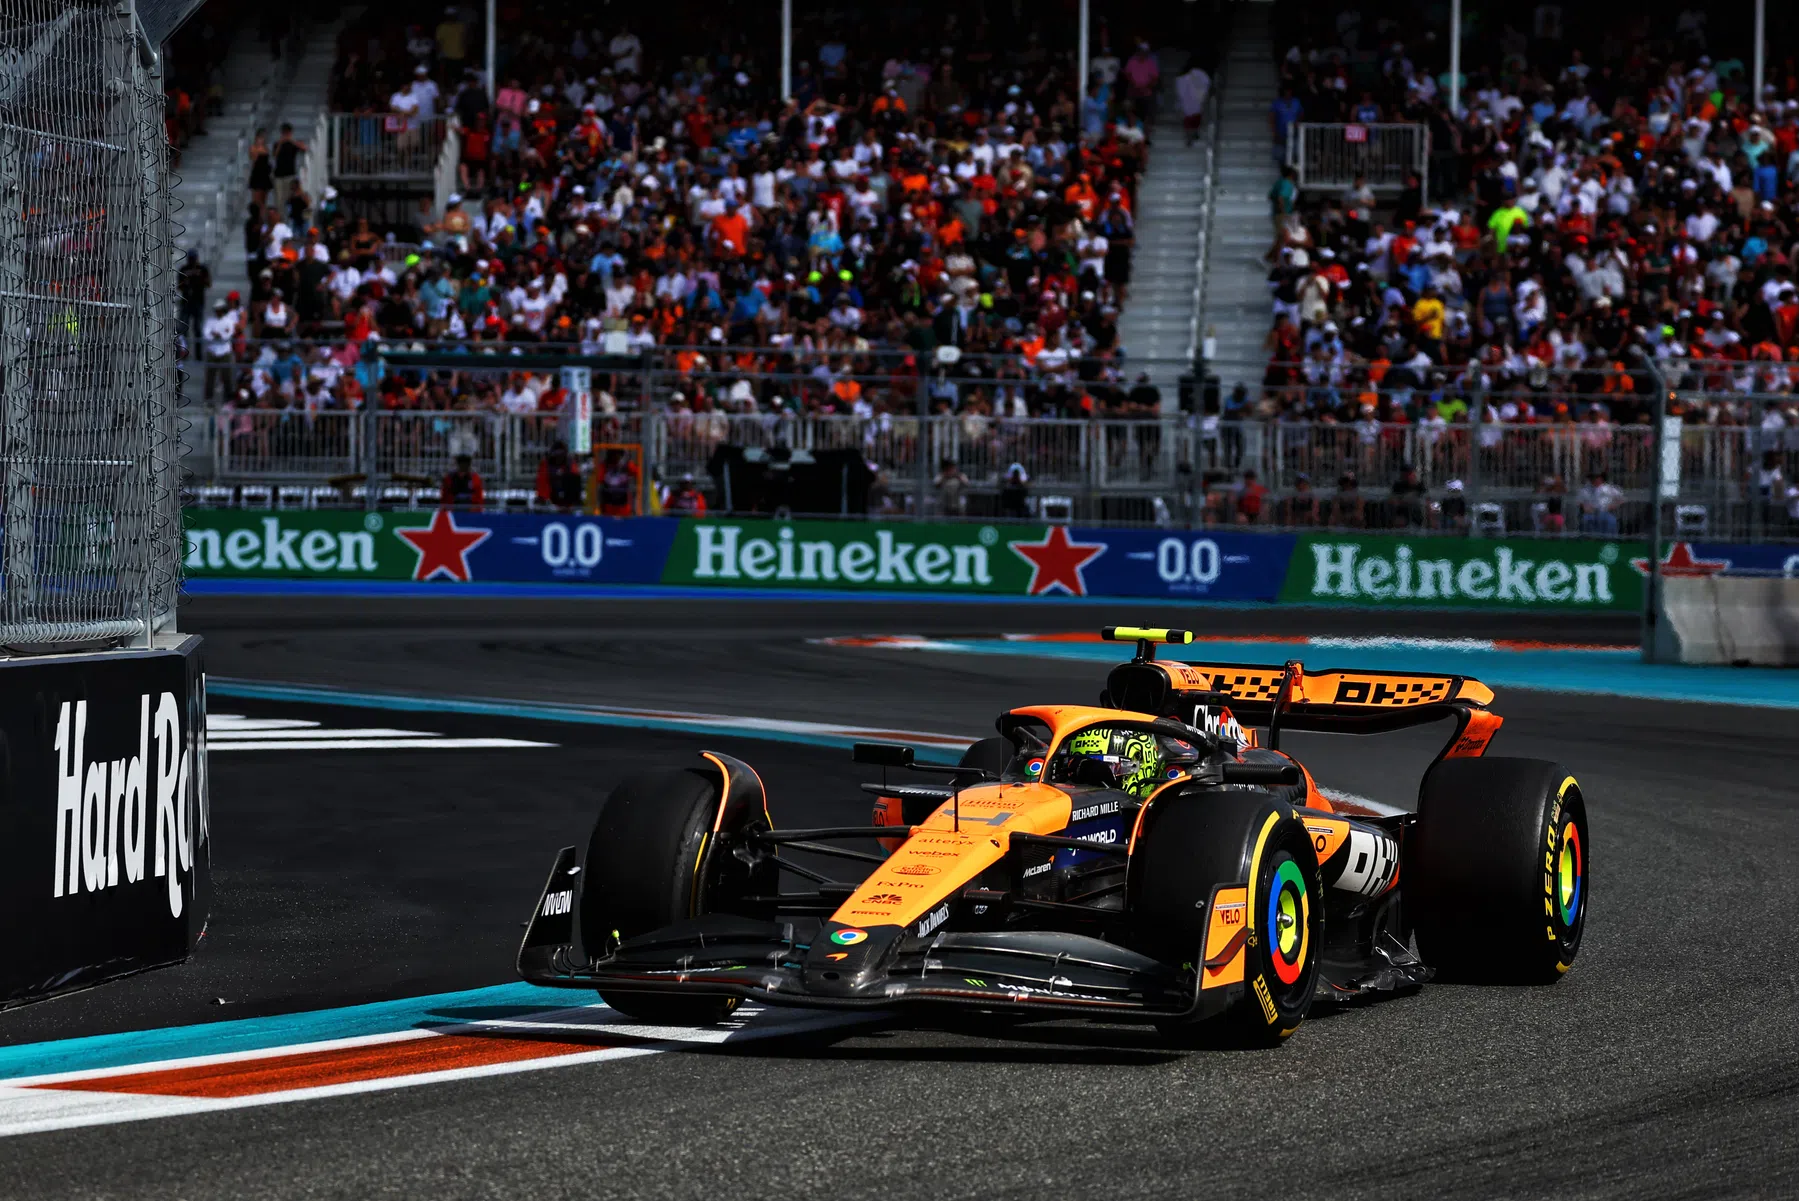 McLaren freut sich darauf, seine Verbesserungen in Imola zu sehen